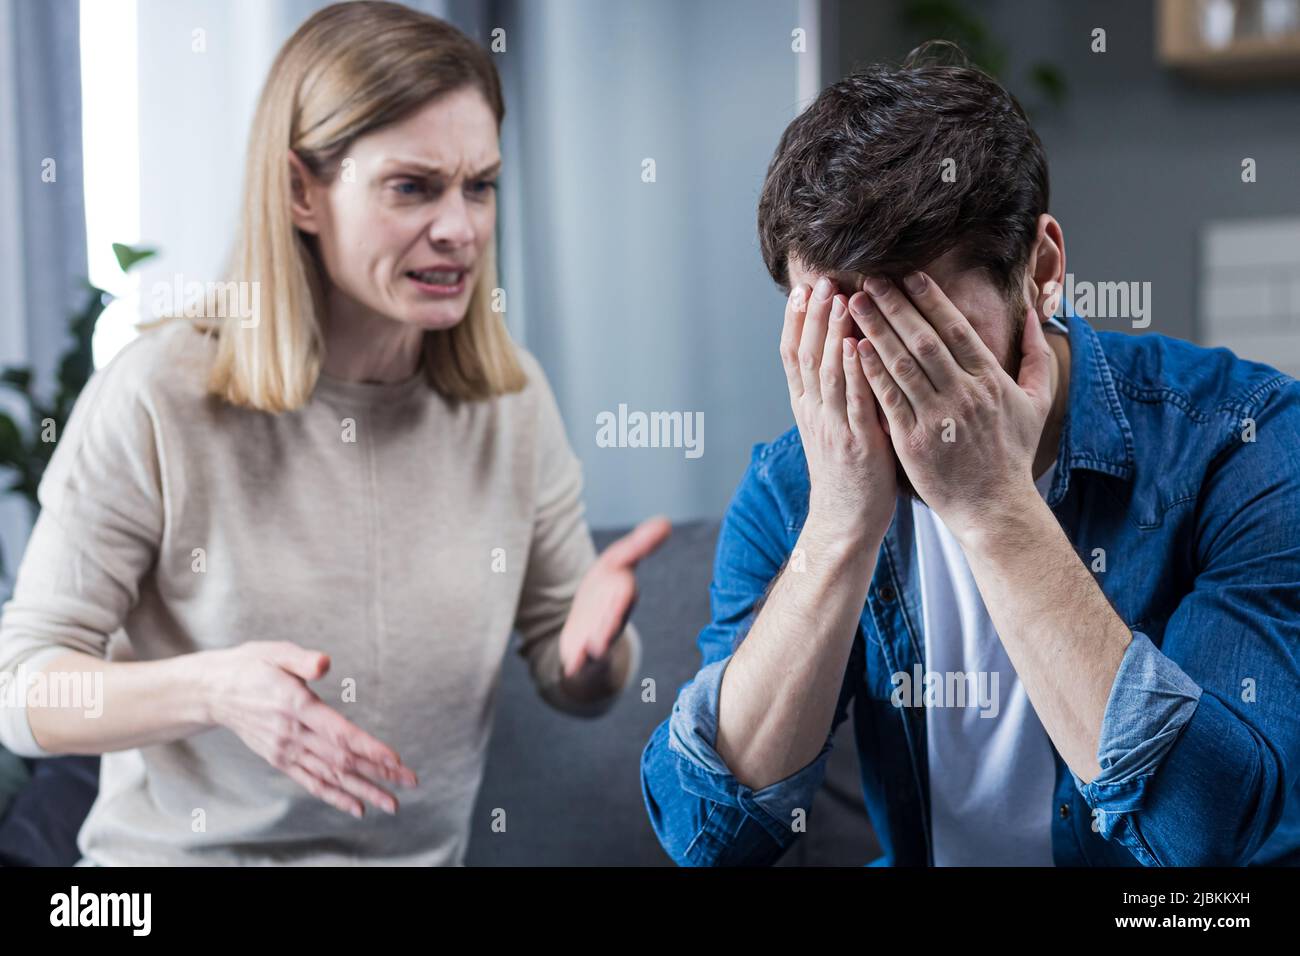 Familienkonflikt, Streit, Missverständnis. Die Frau schreit verzweifelt nach ihrem Mann und weint. Der Mann hört zu und bedeckt sein f Stockfoto